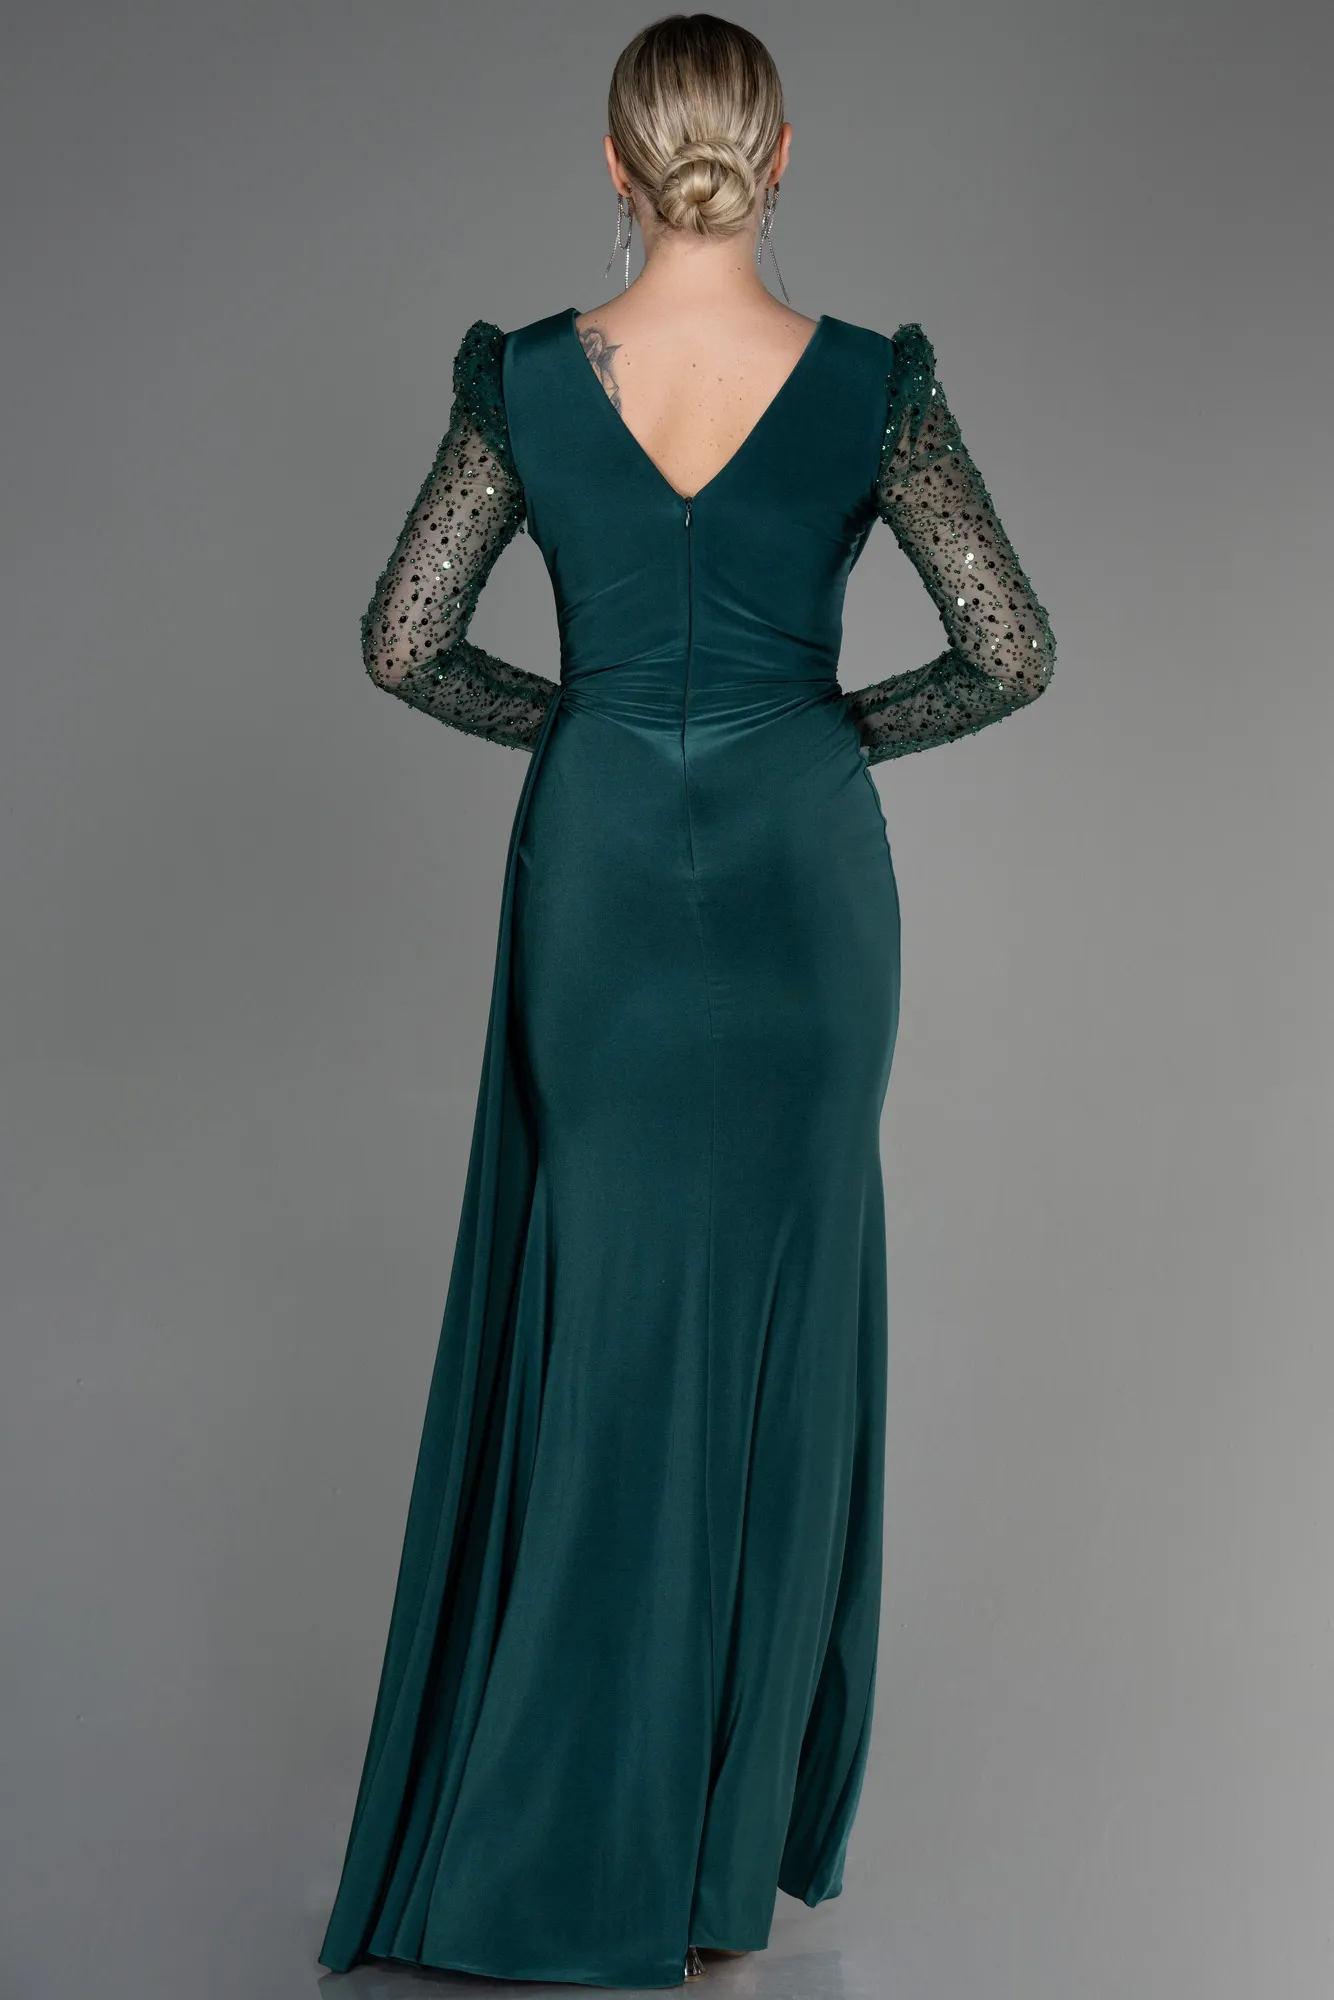 Emerald Green-Long Evening Dress ABU3321